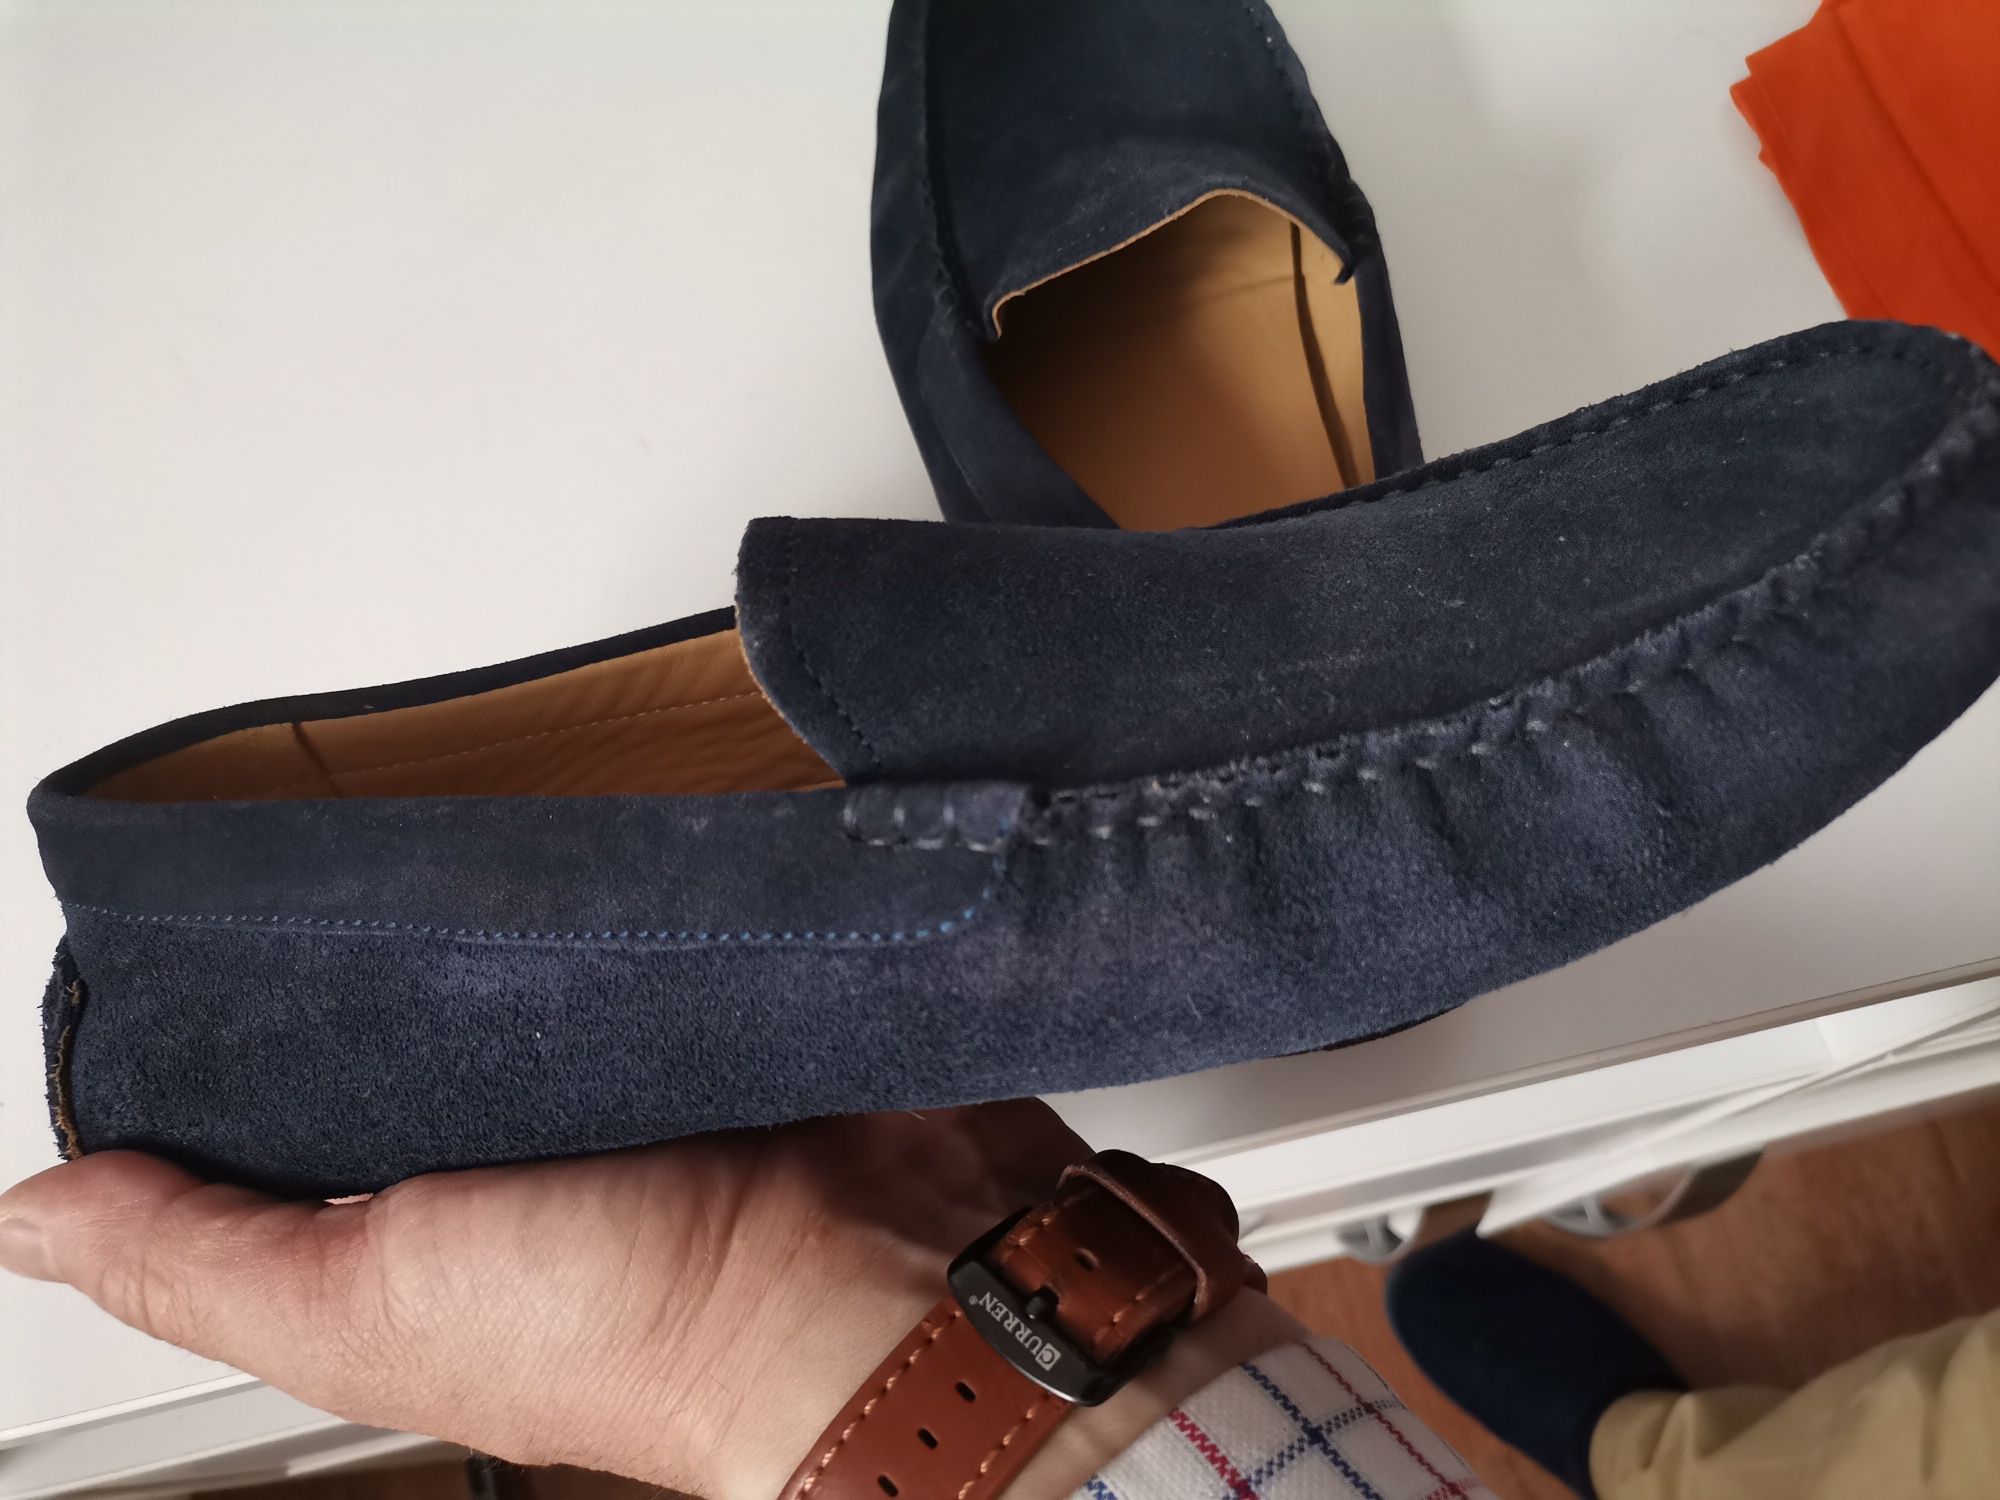 Pantofi noi BIGOTTI VERA PELLE originali, culoare bleau mărimea 43